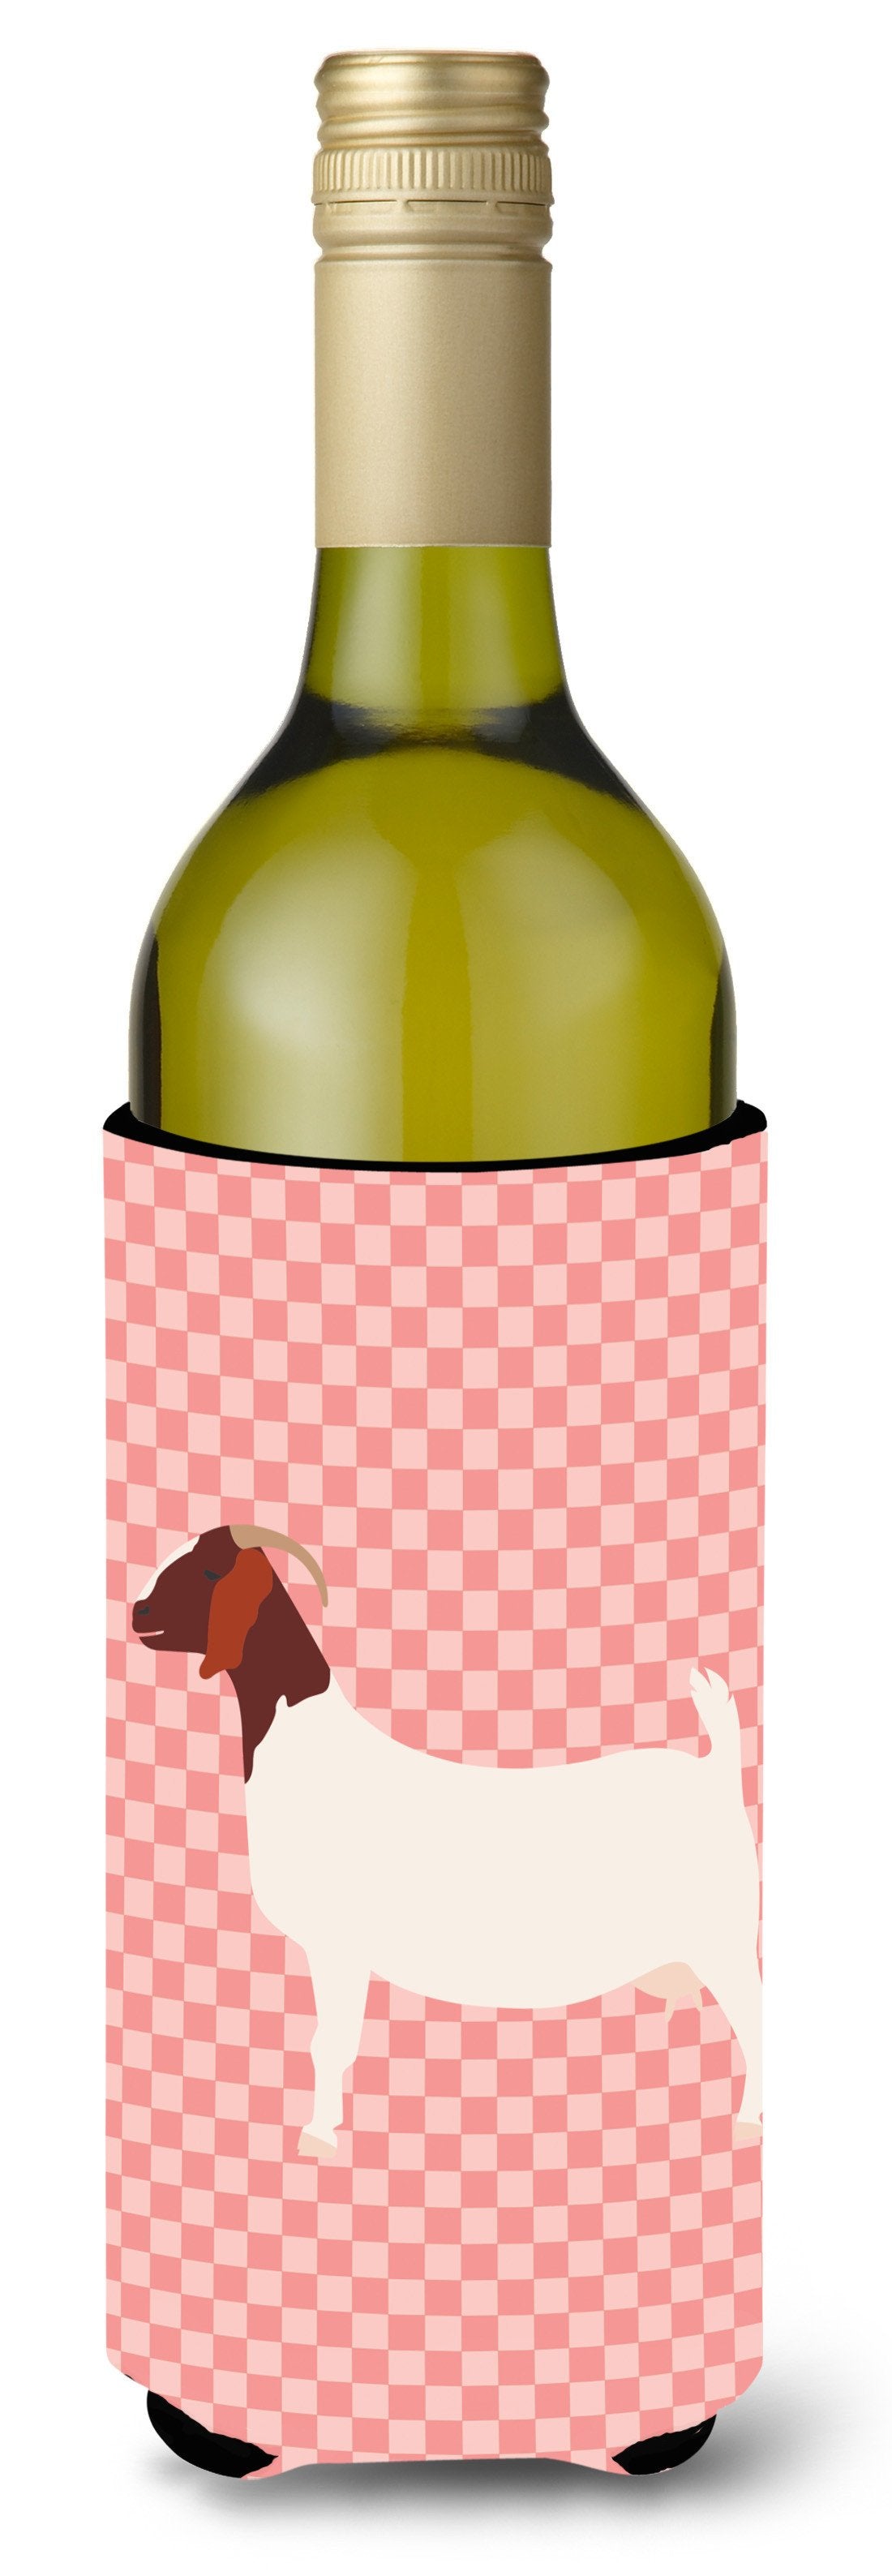 Boer Goat Pink Check Wine Bottle Beverge Insulator Hugger BB7886LITERK by Caroline's Treasures